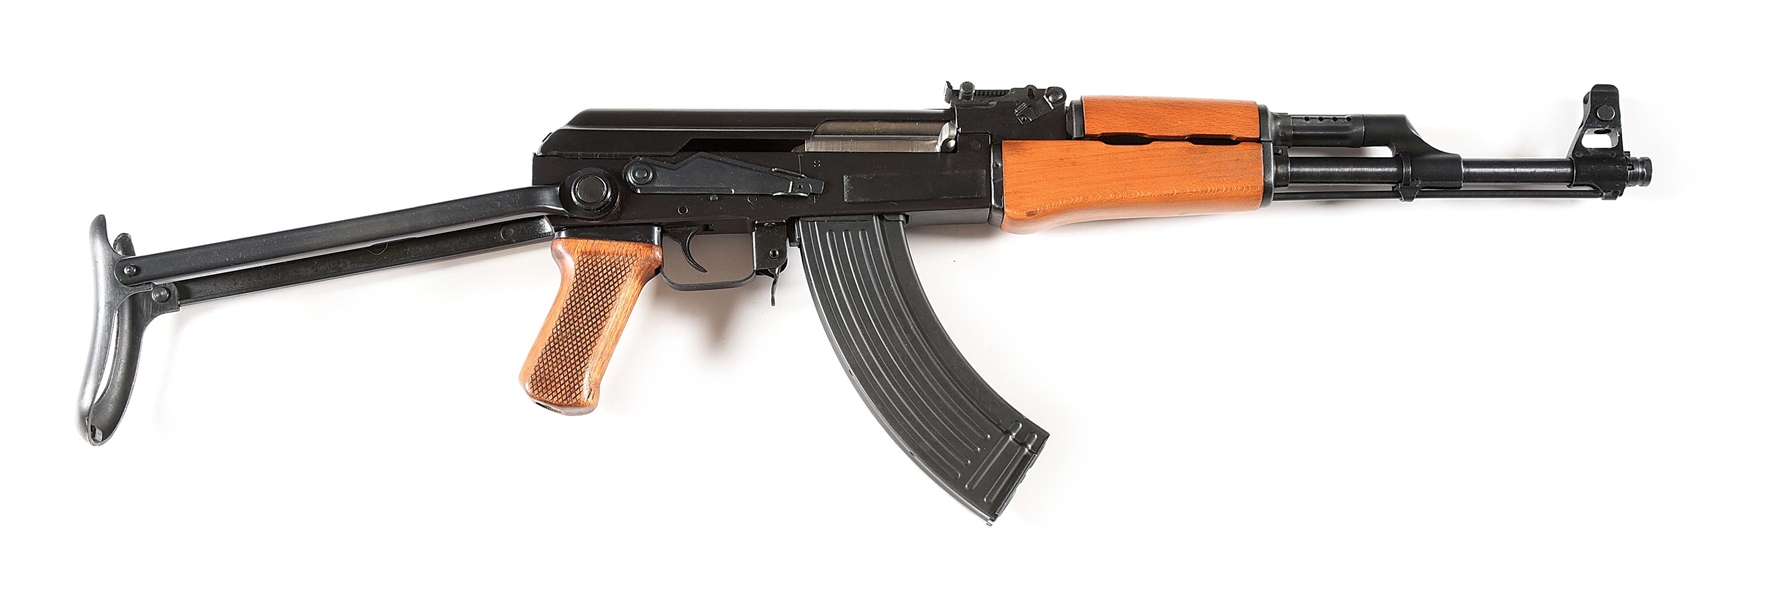 (M) POLYTECH AK-47S SEMI-AUTOMATIC RIFLE WITH UNDERFOLDER STOCK.